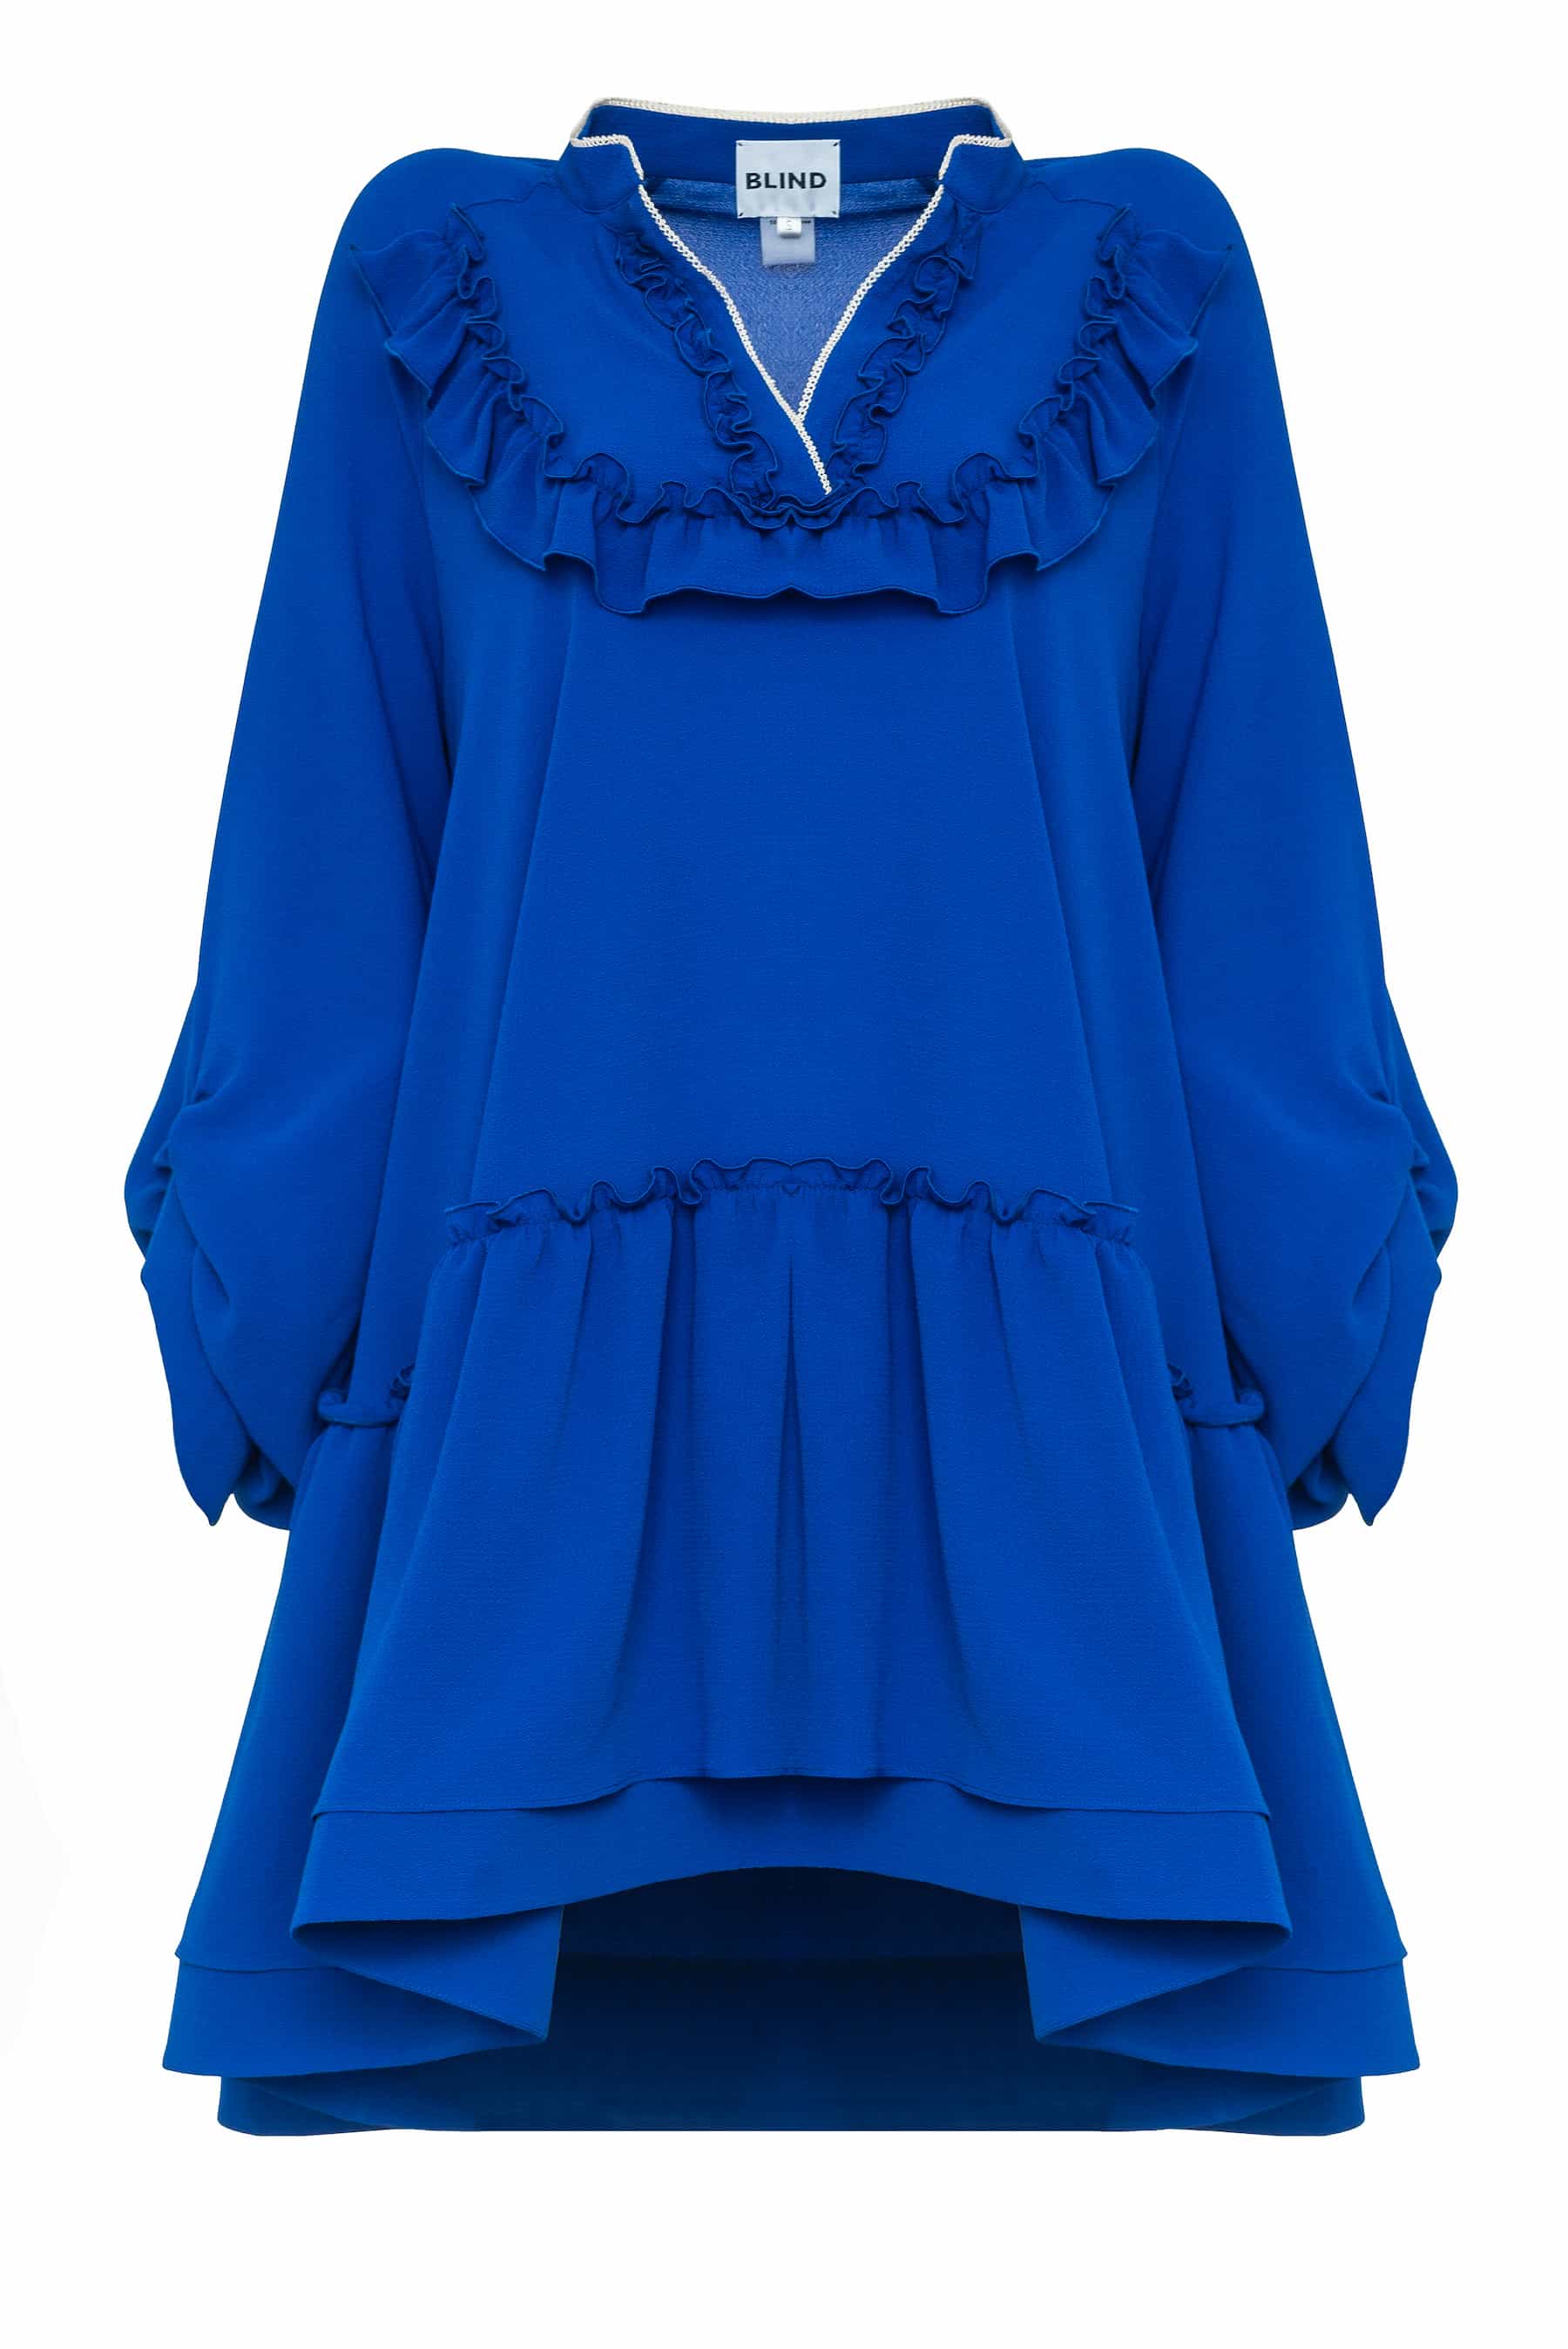 Сукня із крепу кольору синій електрик вільного крою, з воланом